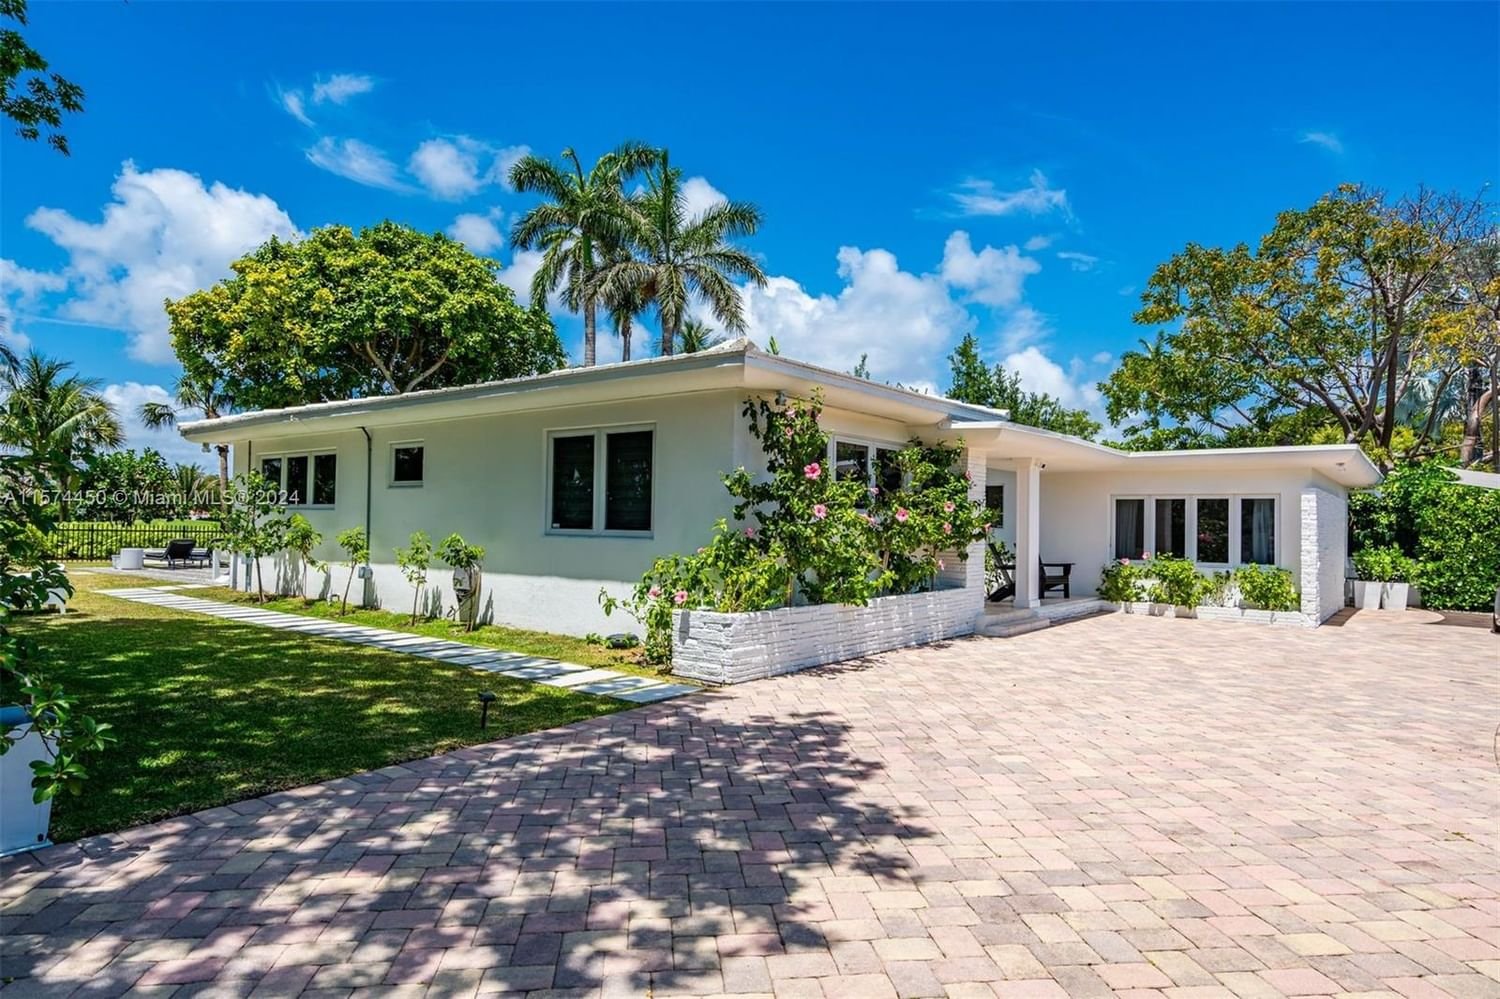 Real estate property located at 6060-6100 La Gorce Dr, Miami-Dade County, BEACH VIEW ADDN, Miami Beach, FL